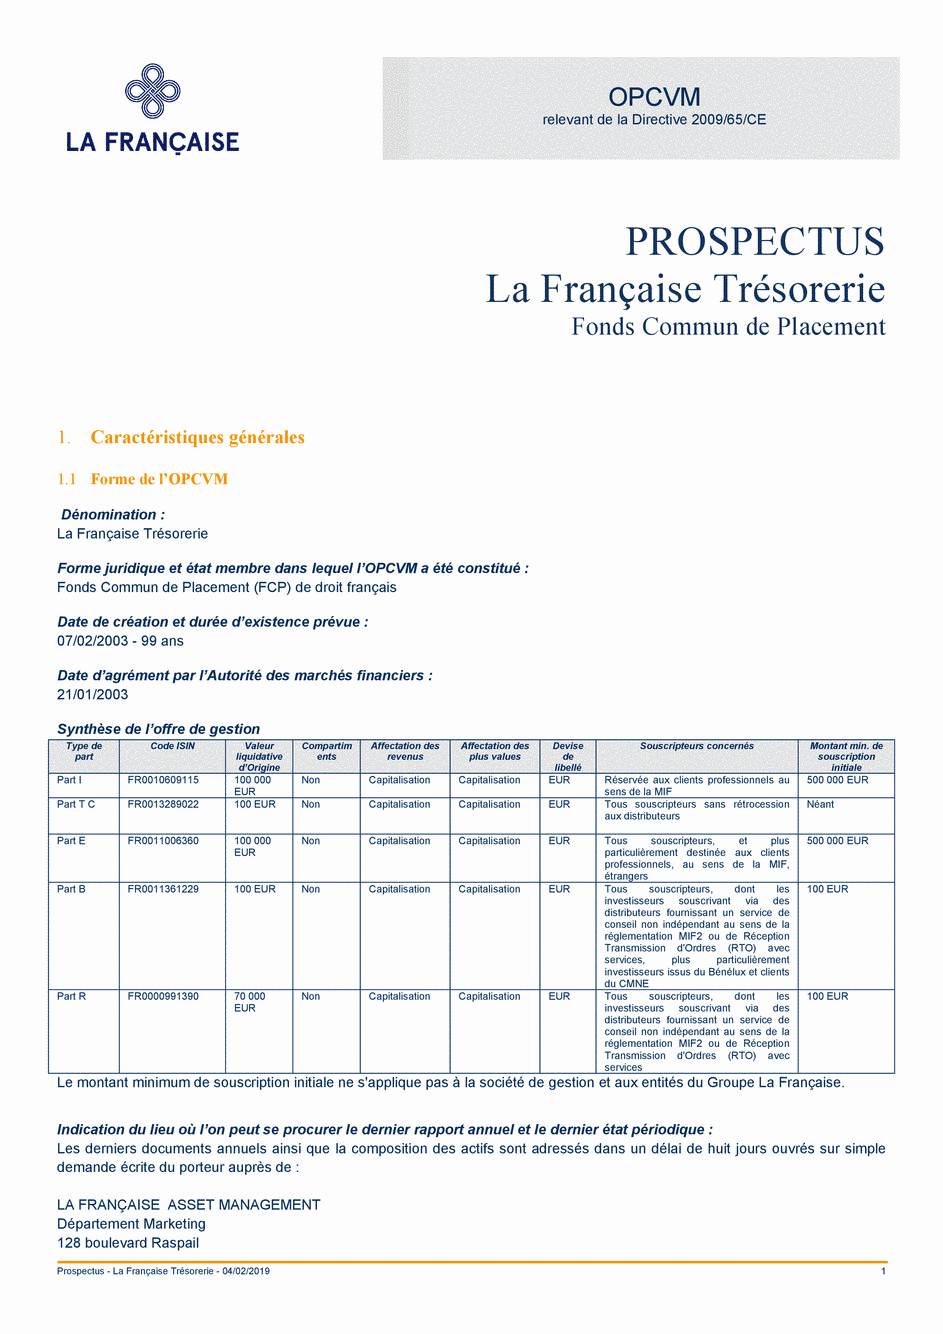 Prospectus La Française Trésorerie - Part B - 04/02/2019 - Français